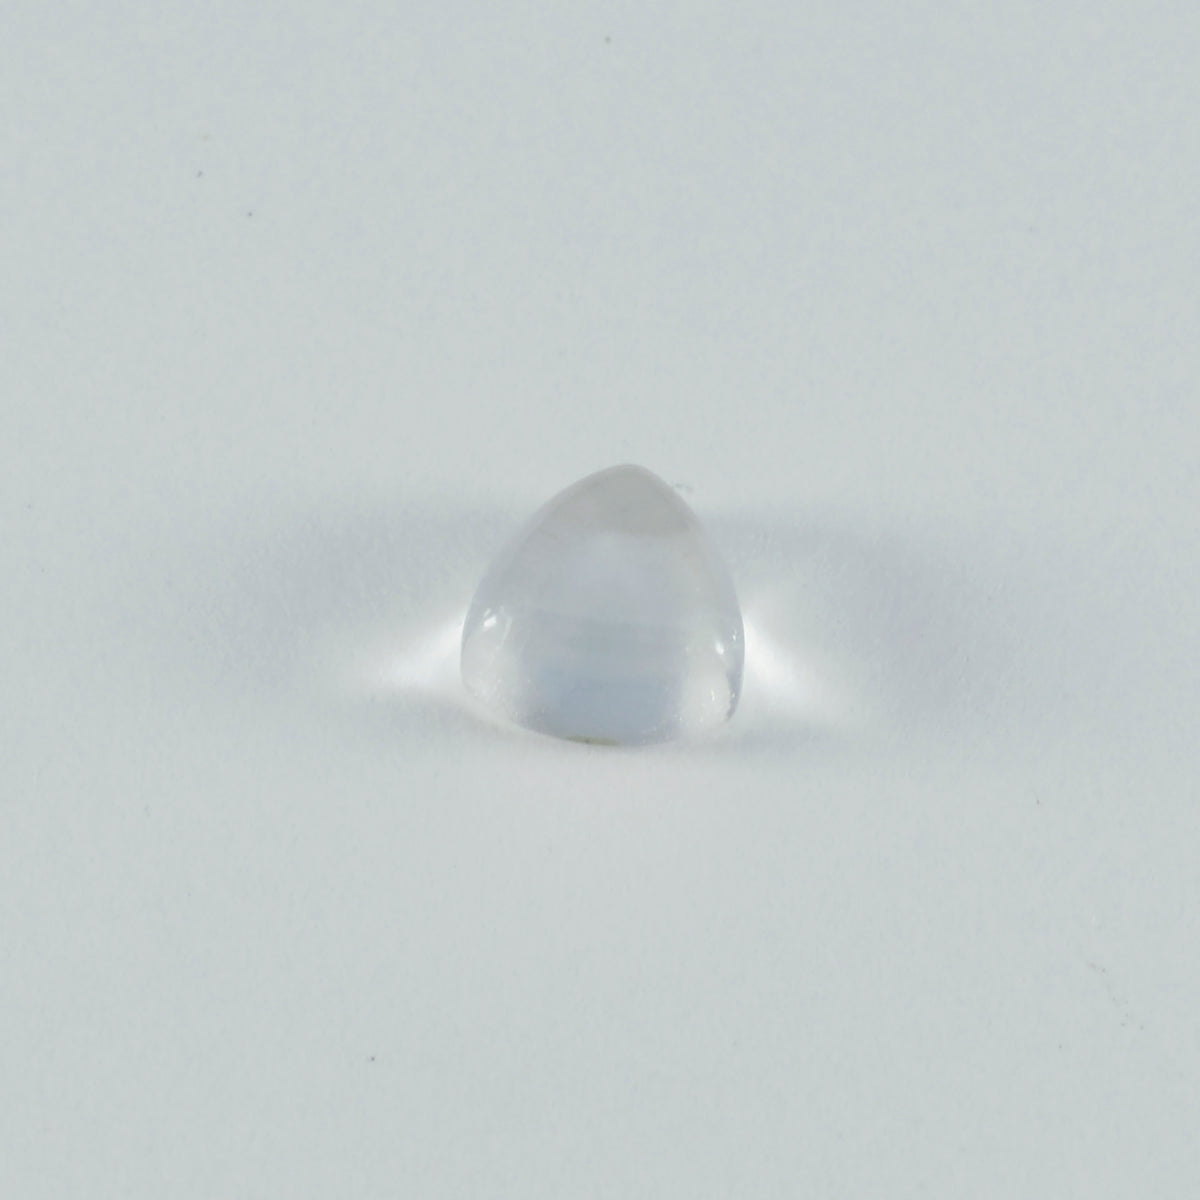 riyogems 1шт кабошон из белого кристалла кварца 15x15 мм форма триллиона качественных драгоценных камней